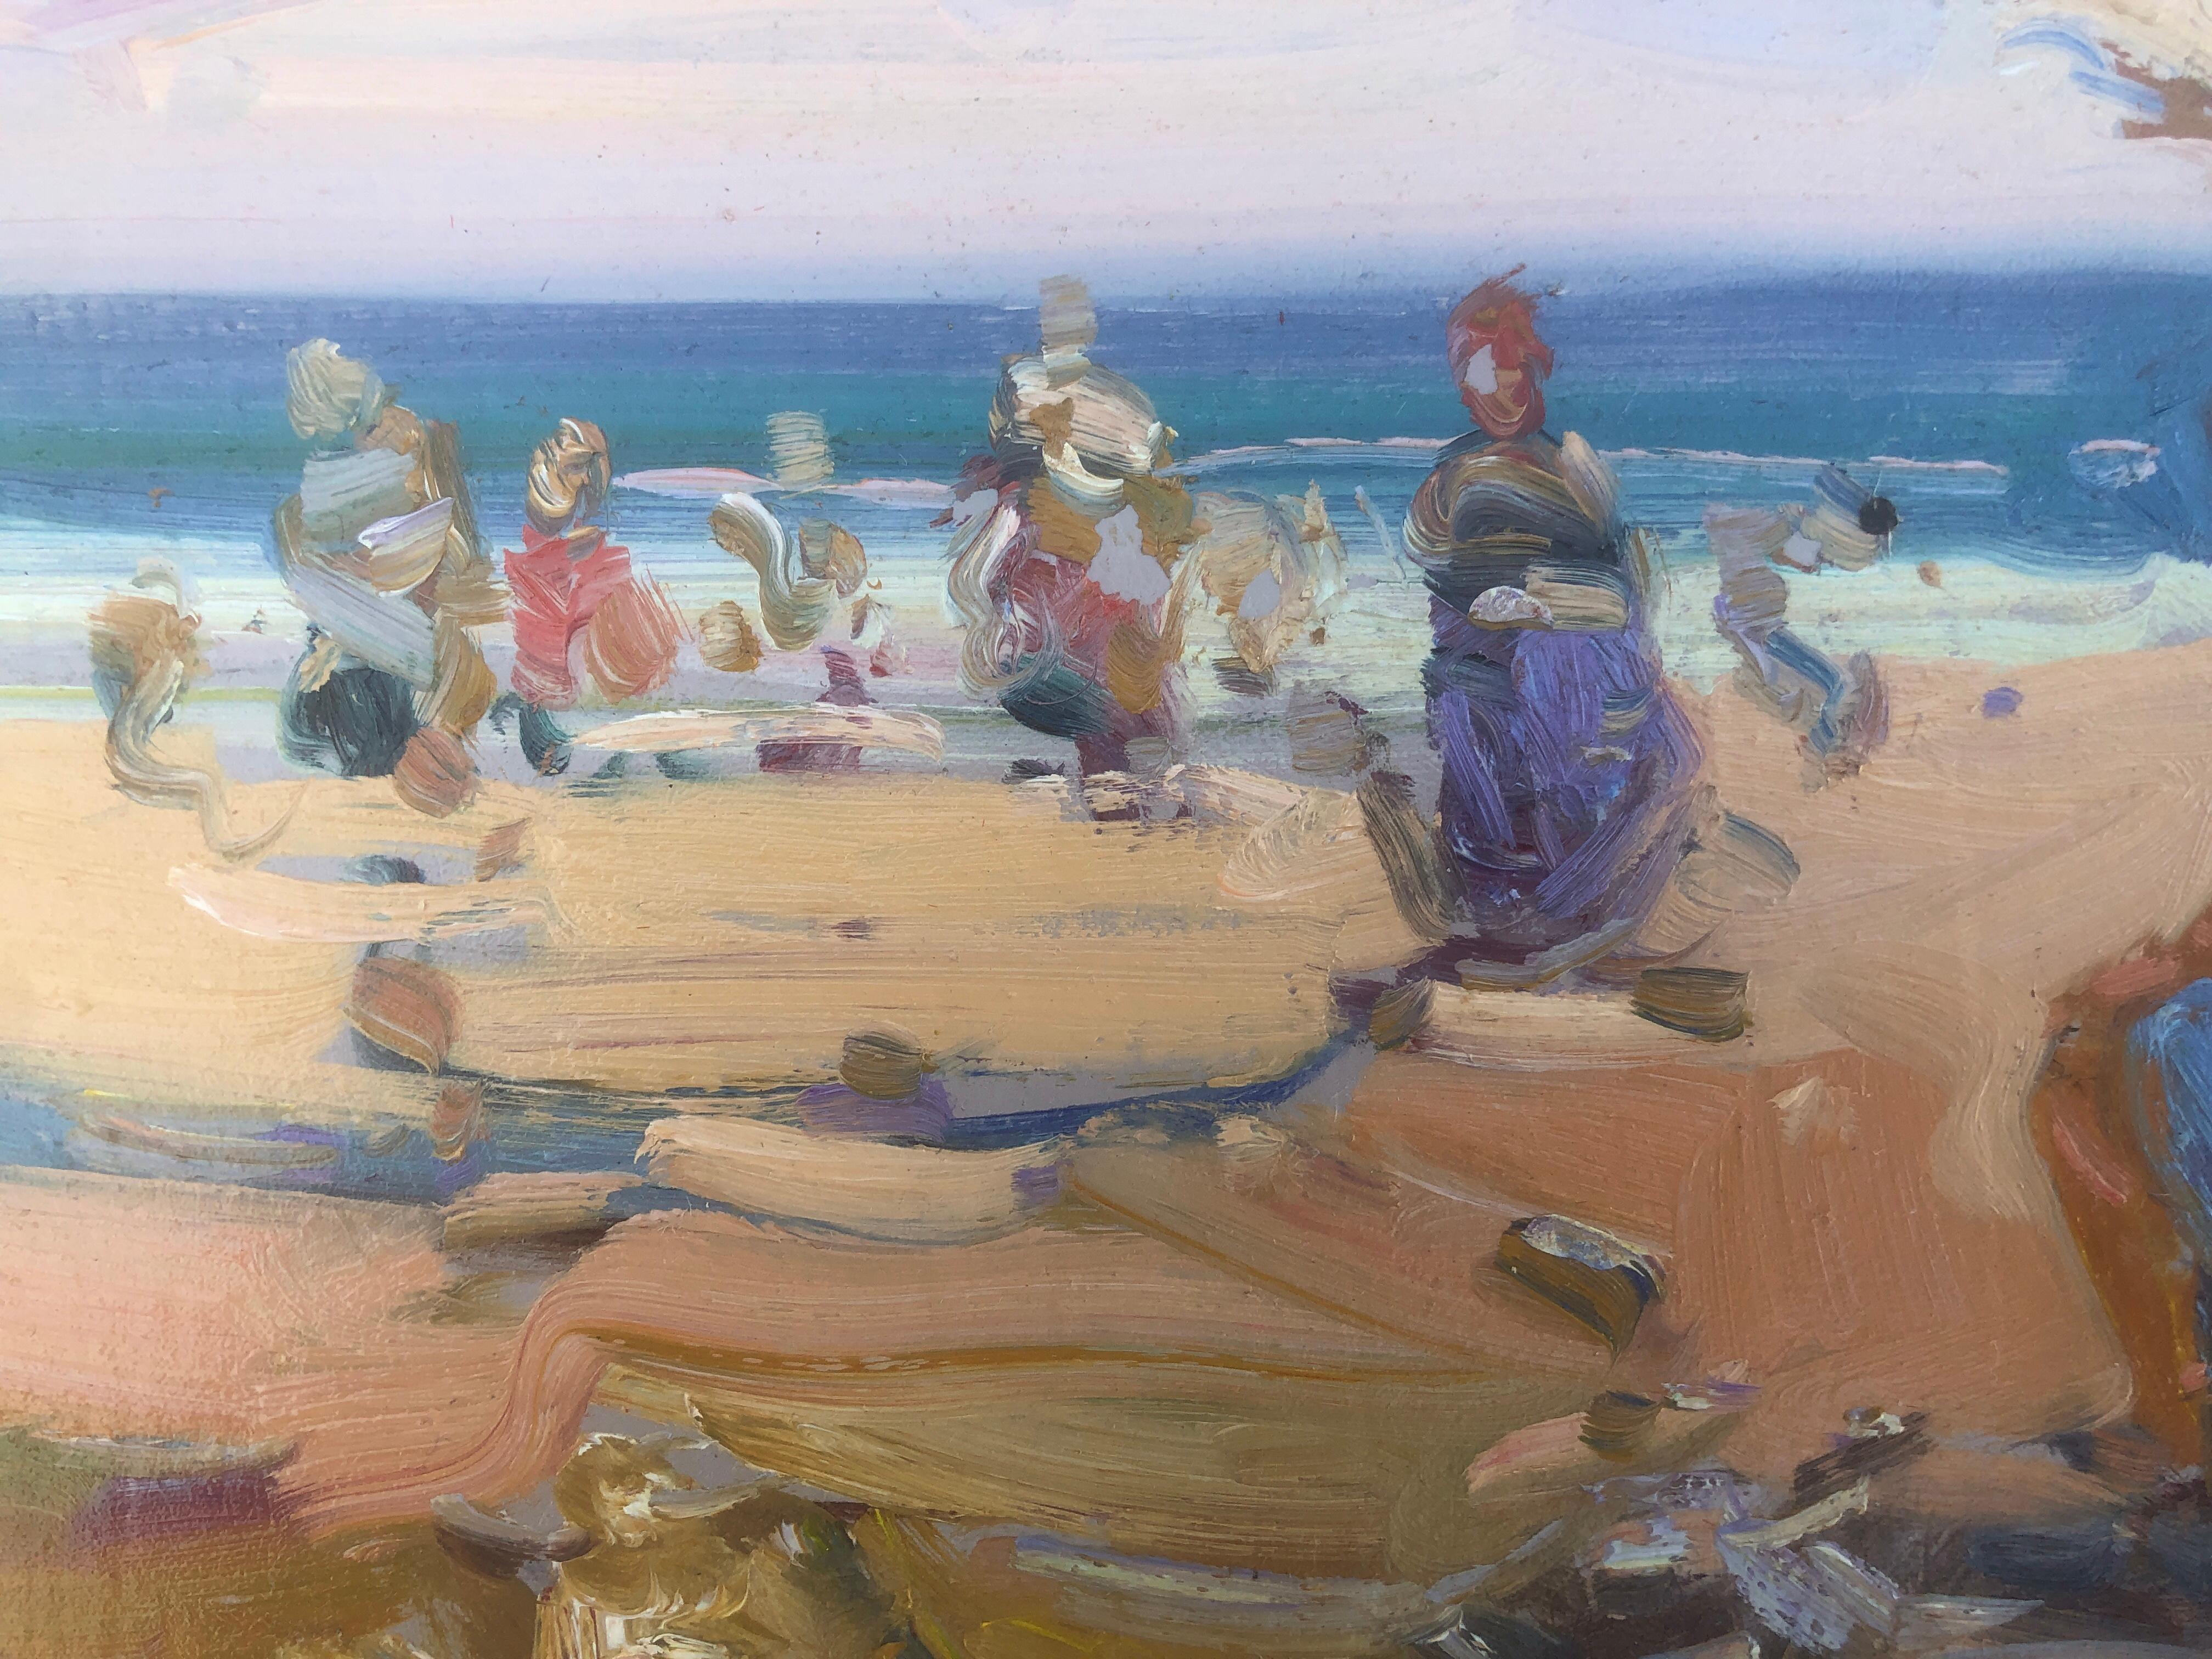 Jour de plage Espagne huile sur carton peinture paysage marin espagnol - Post-impressionnisme Painting par Gabriel Casarrubios